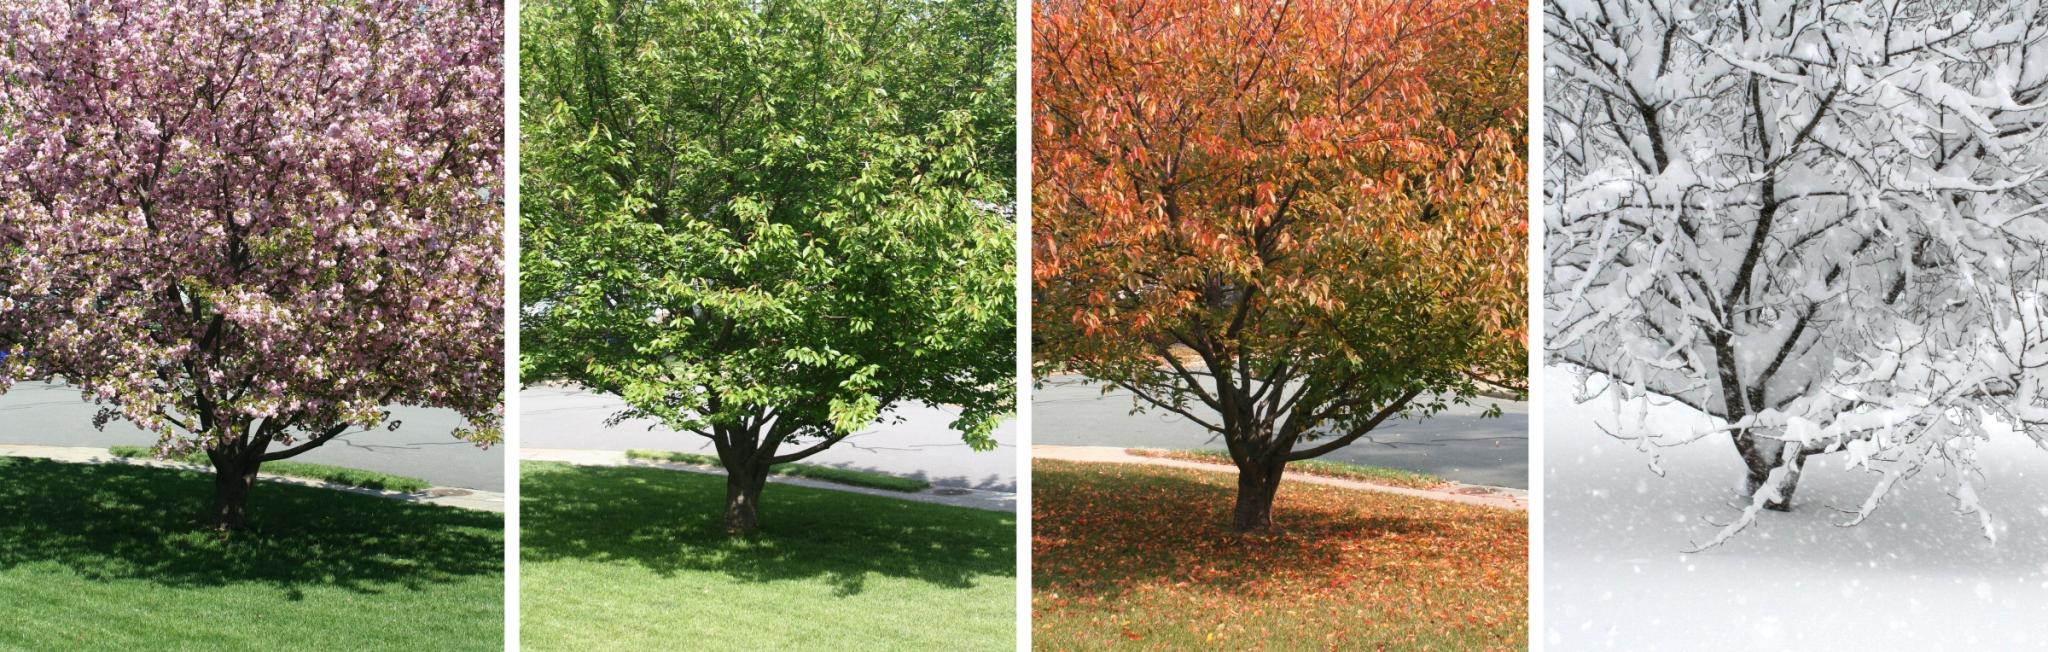 tree at all 4 seasons, spring, summer, fall, winter